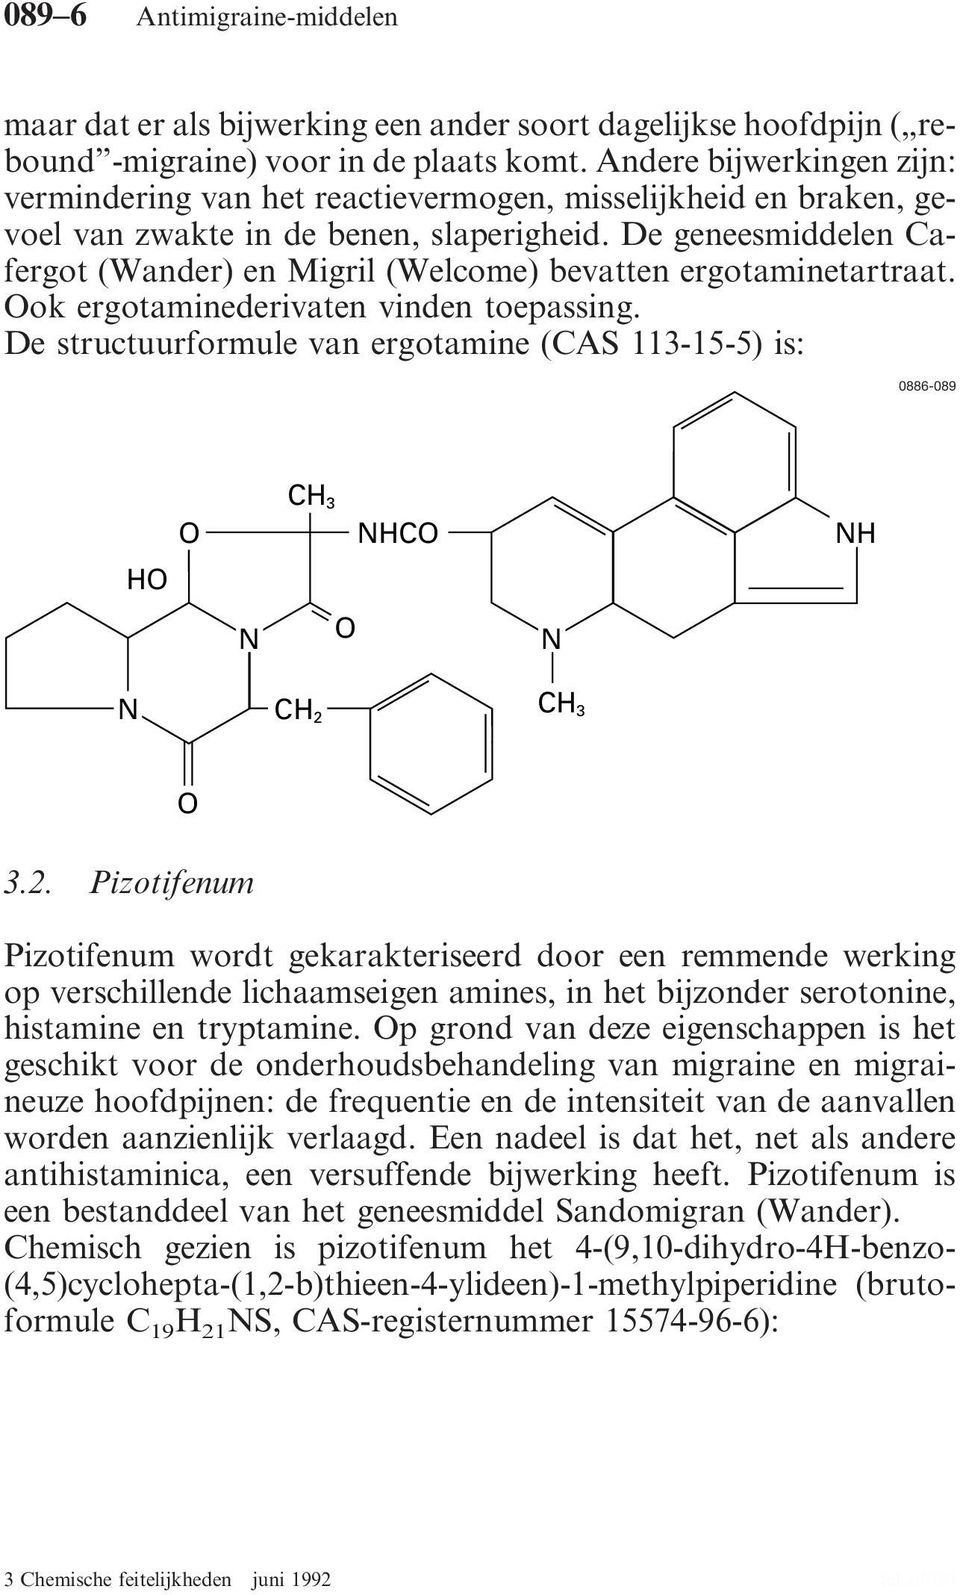 De geneesmiddelen Cafergot (Wander) en Migril (Welcome) bevatten ergotaminetartraat. Ook ergotaminederivaten vinden toepassing.